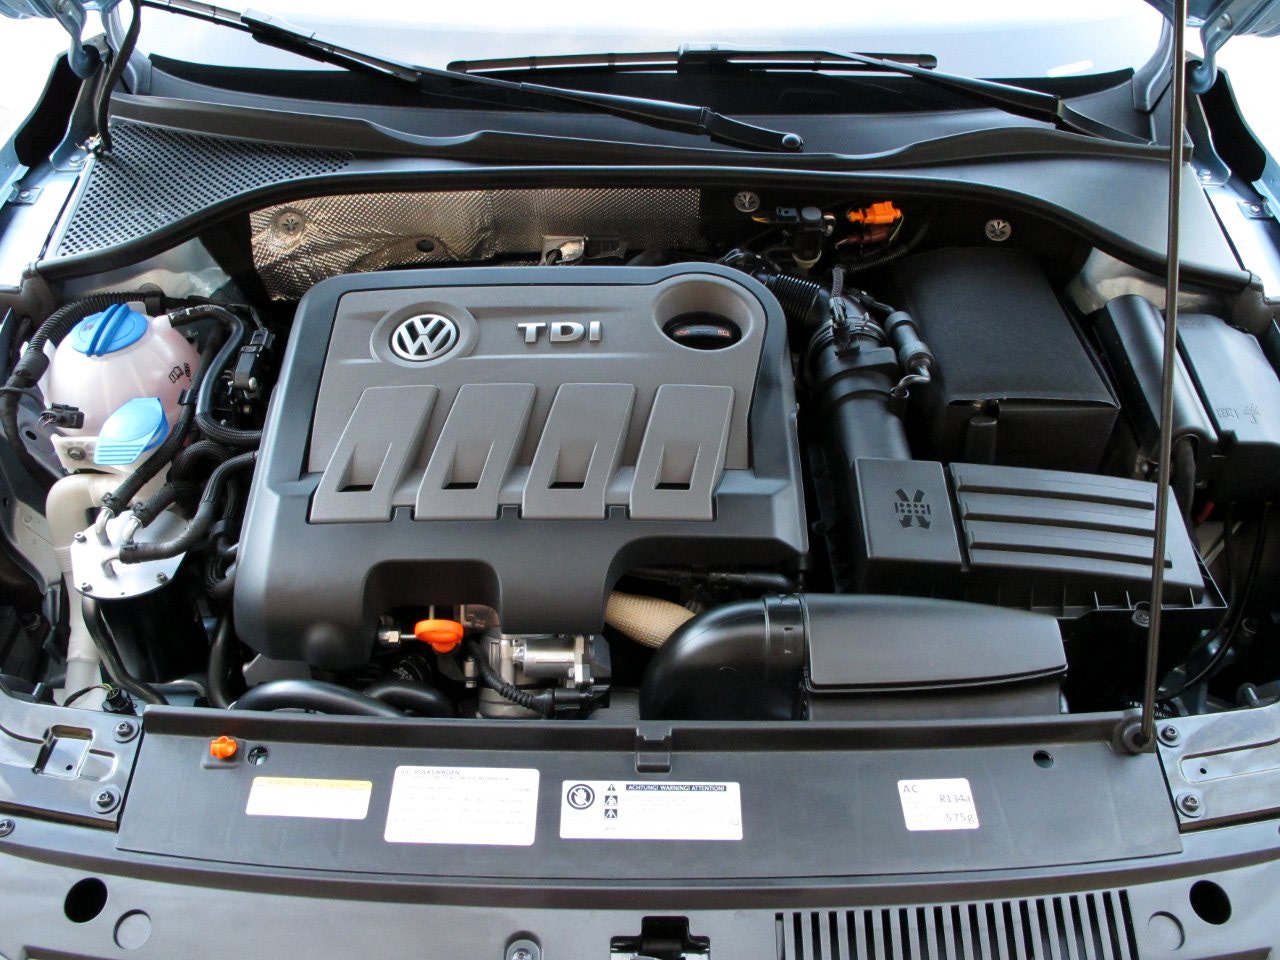 Read more: 2012 Volkswagen Passat TDI long-term index